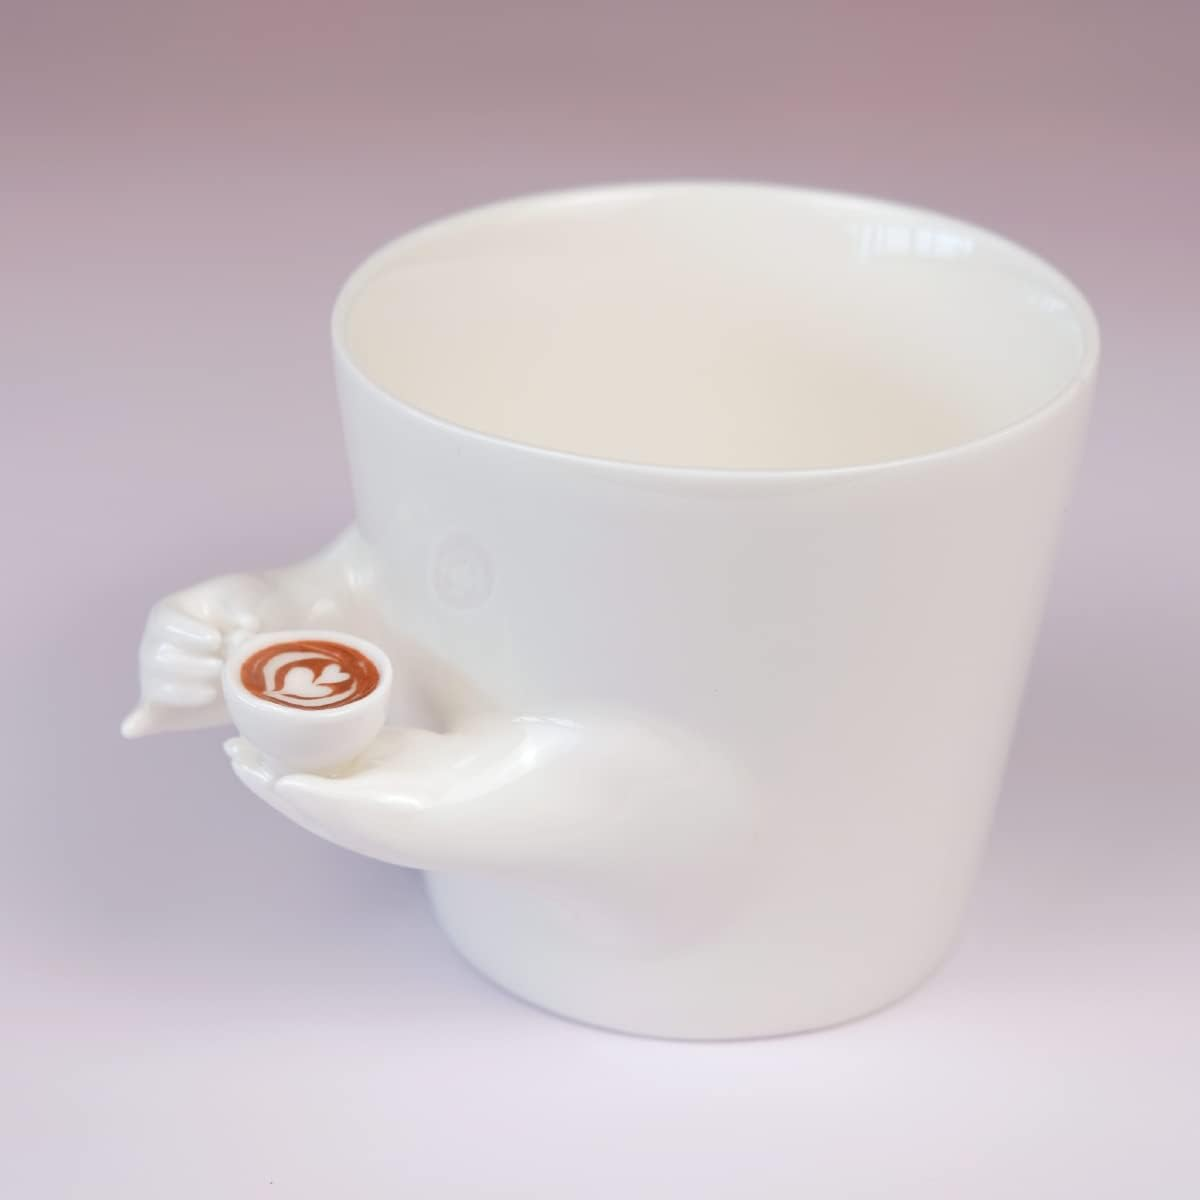 Coffee Mug with Cute Tiny Coffee Cup